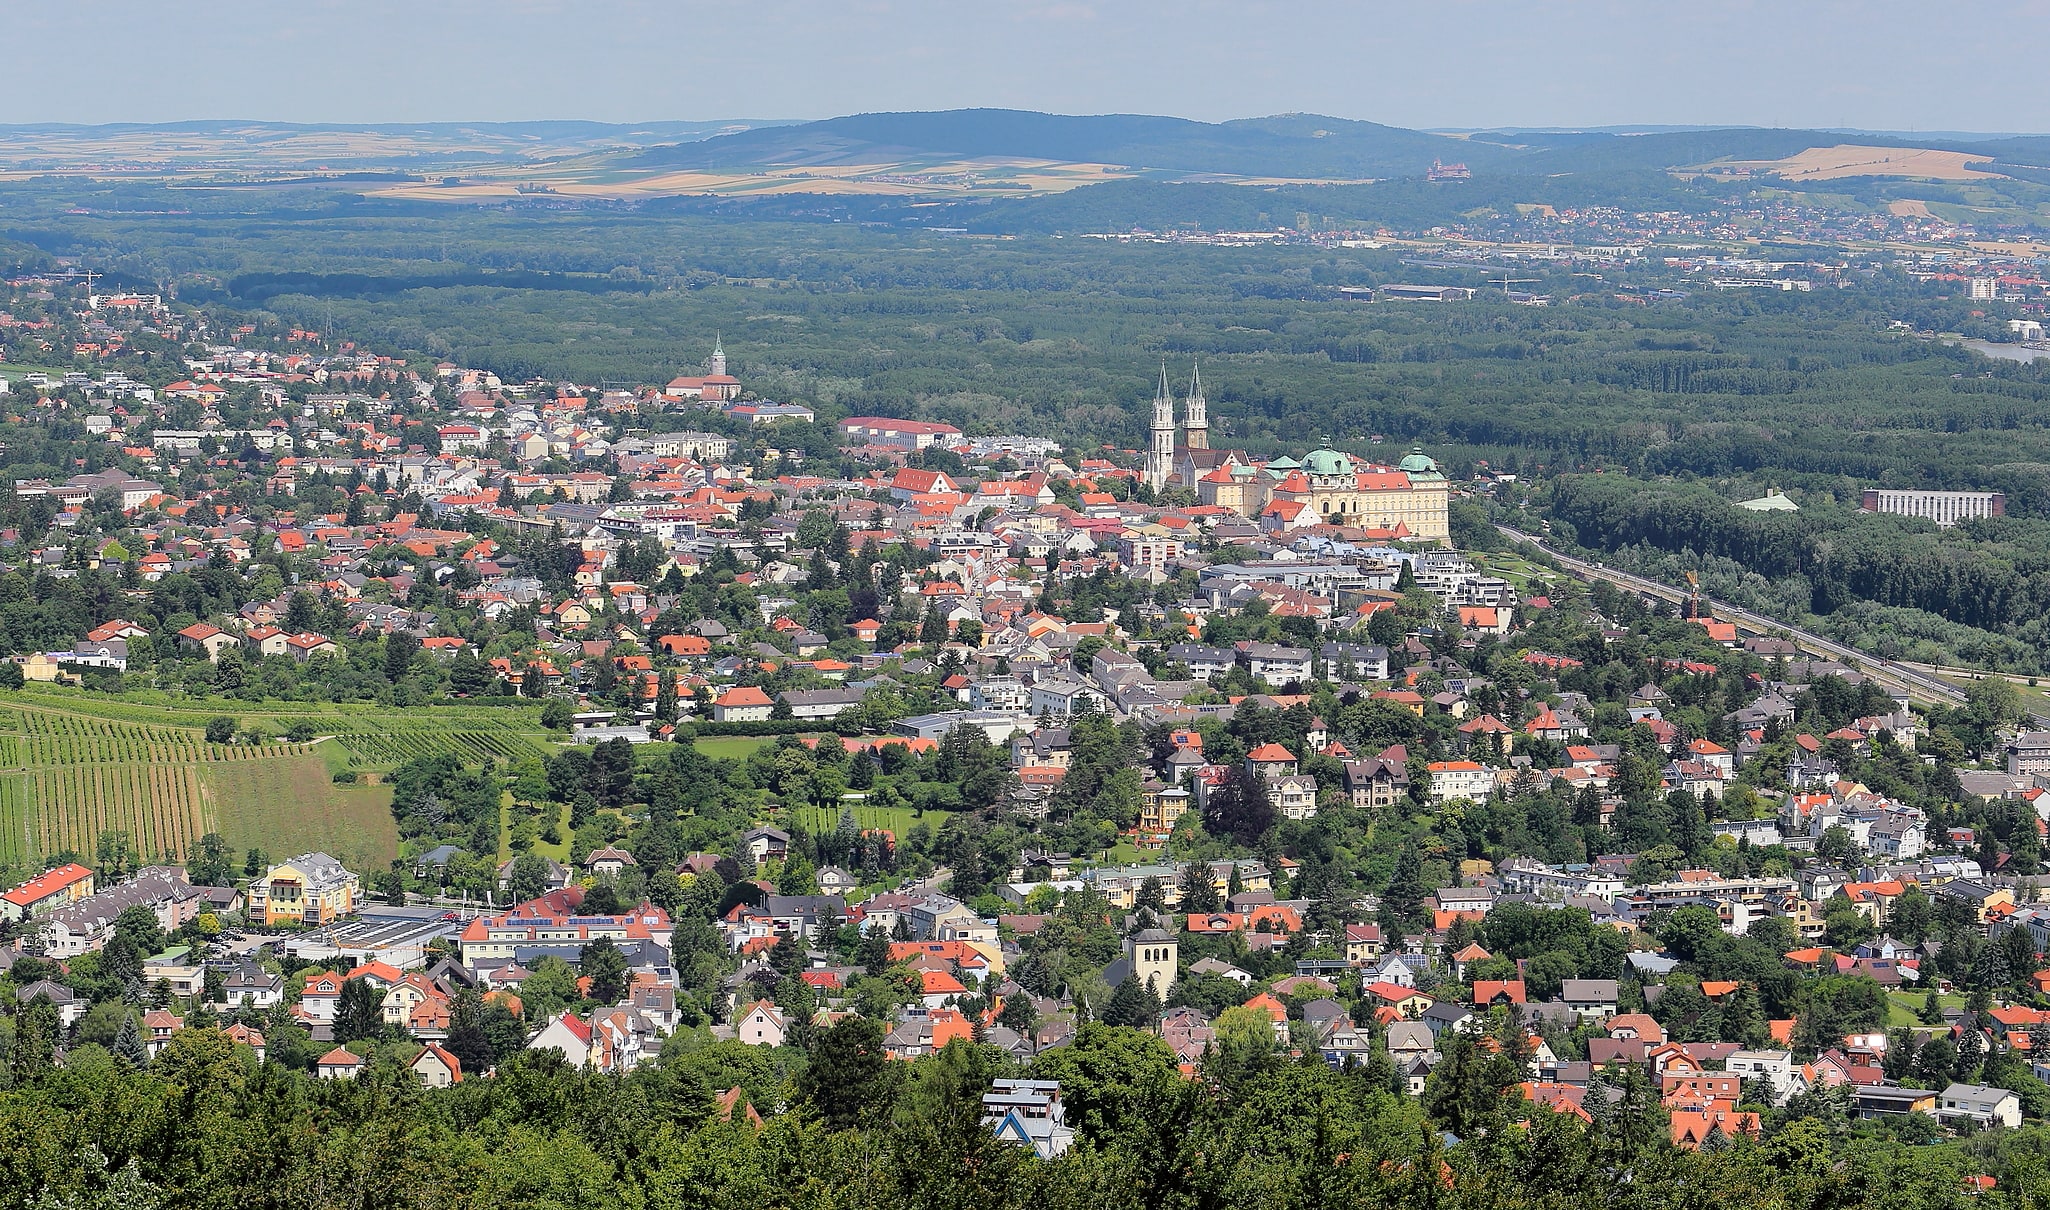 Klosterneuburg, Austria